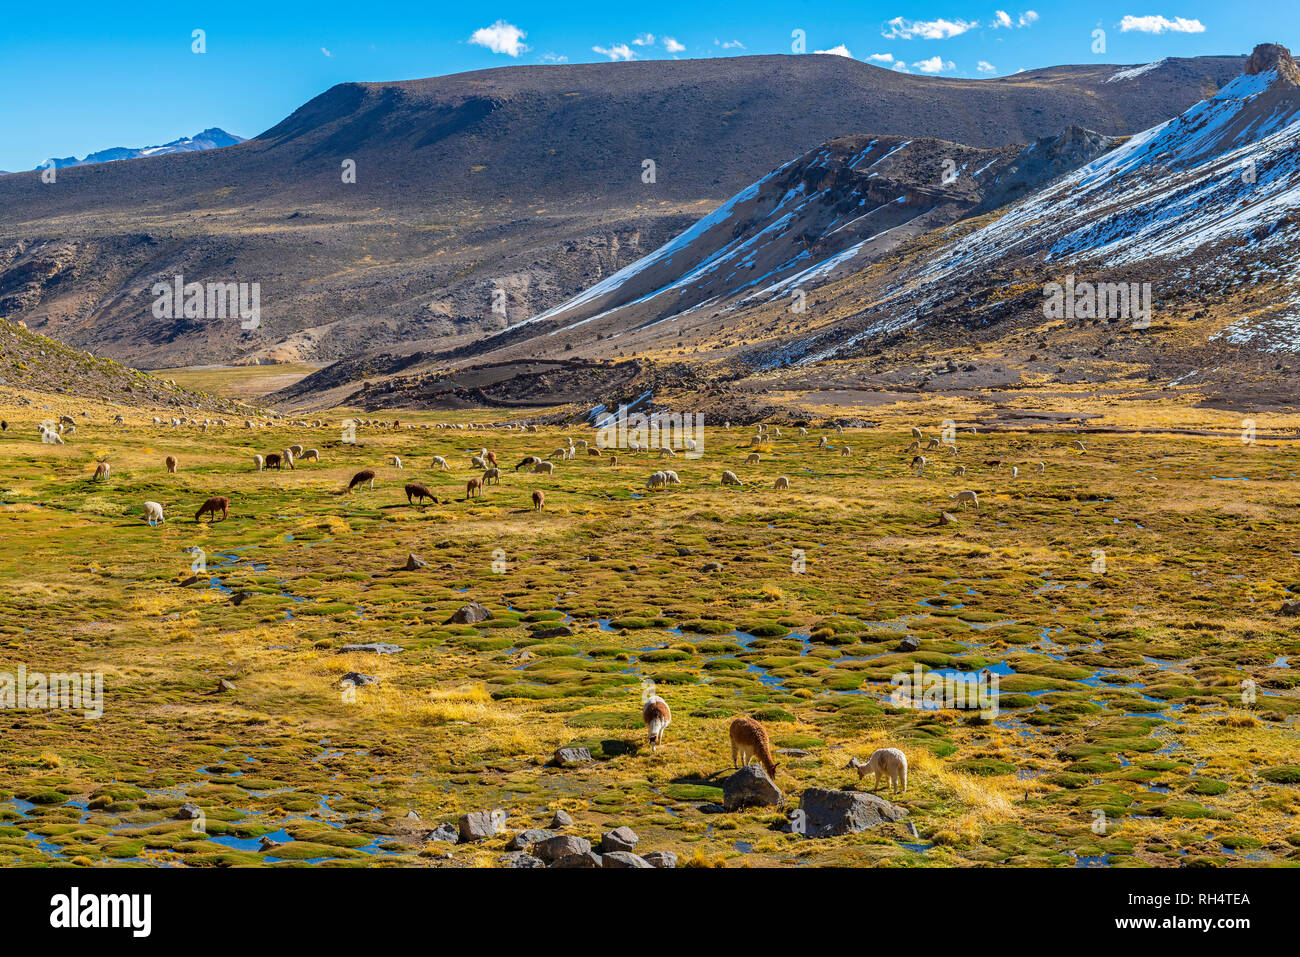 Centinaia di lama e alpaca pascolano in una valle fertile nella riserva nazionale di Salinas y Aguada Blanca dal Canyon del Colca, Arequipa, Perù. Foto Stock